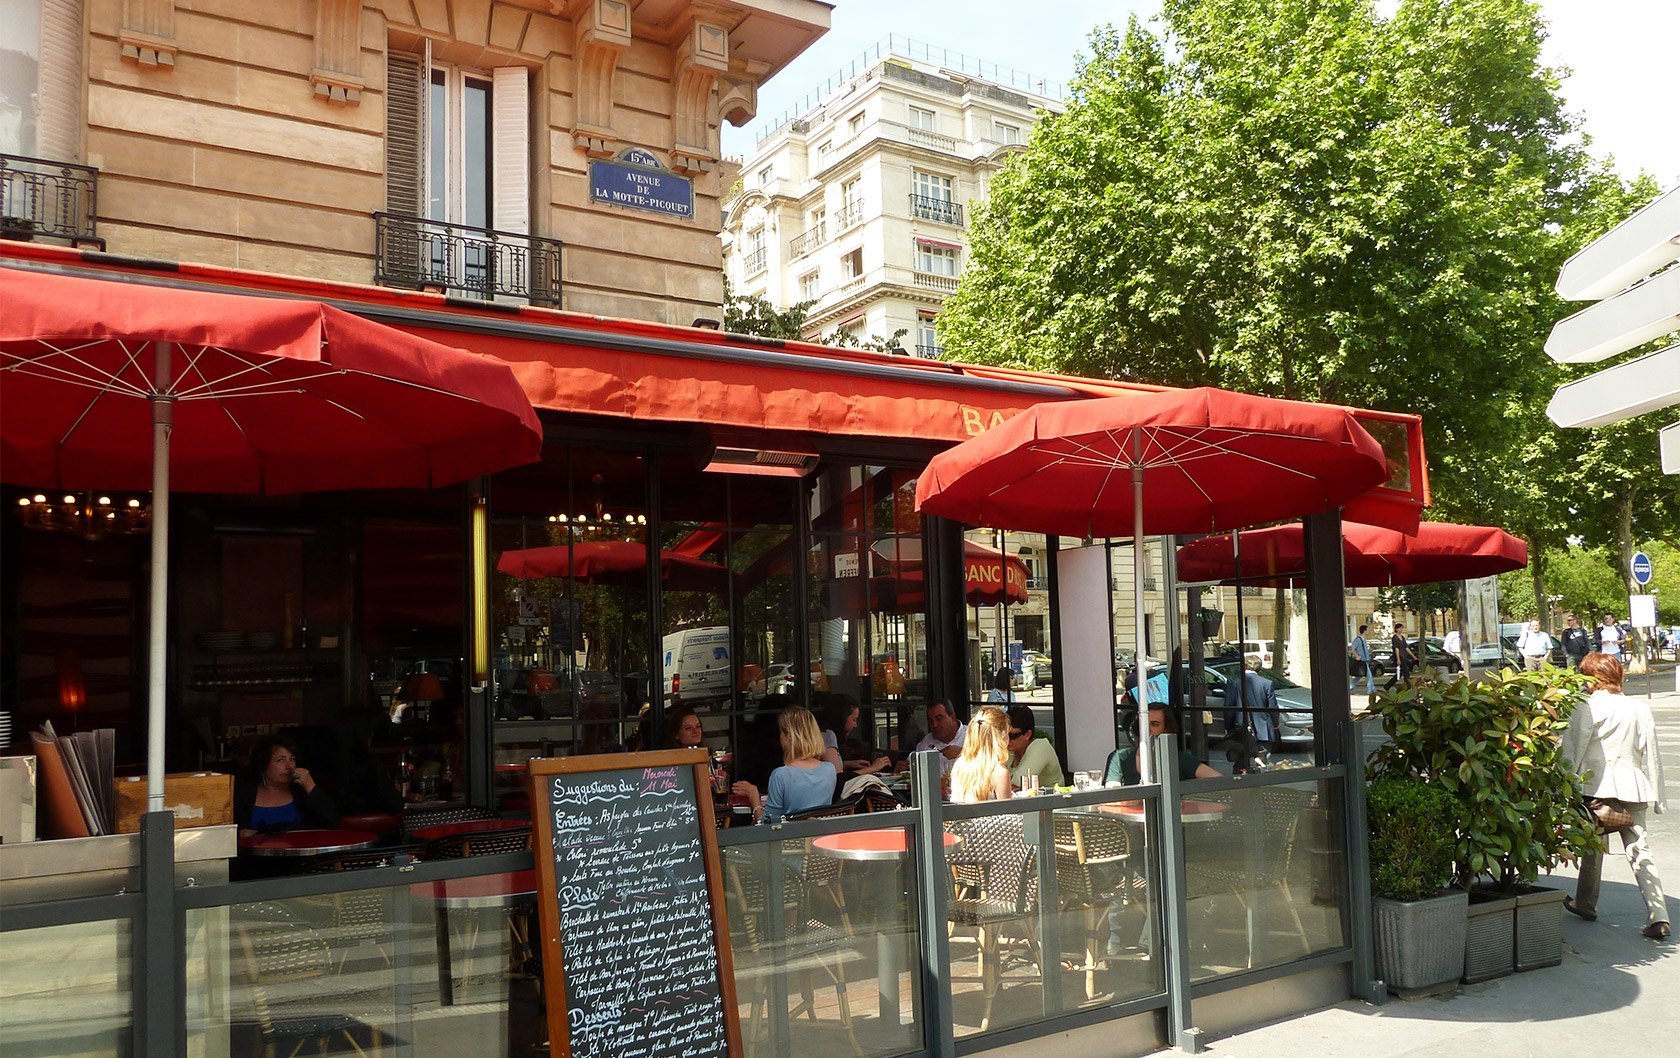 The Best Shopping Street in Paris – La rue du Commerce by Paris Perfect